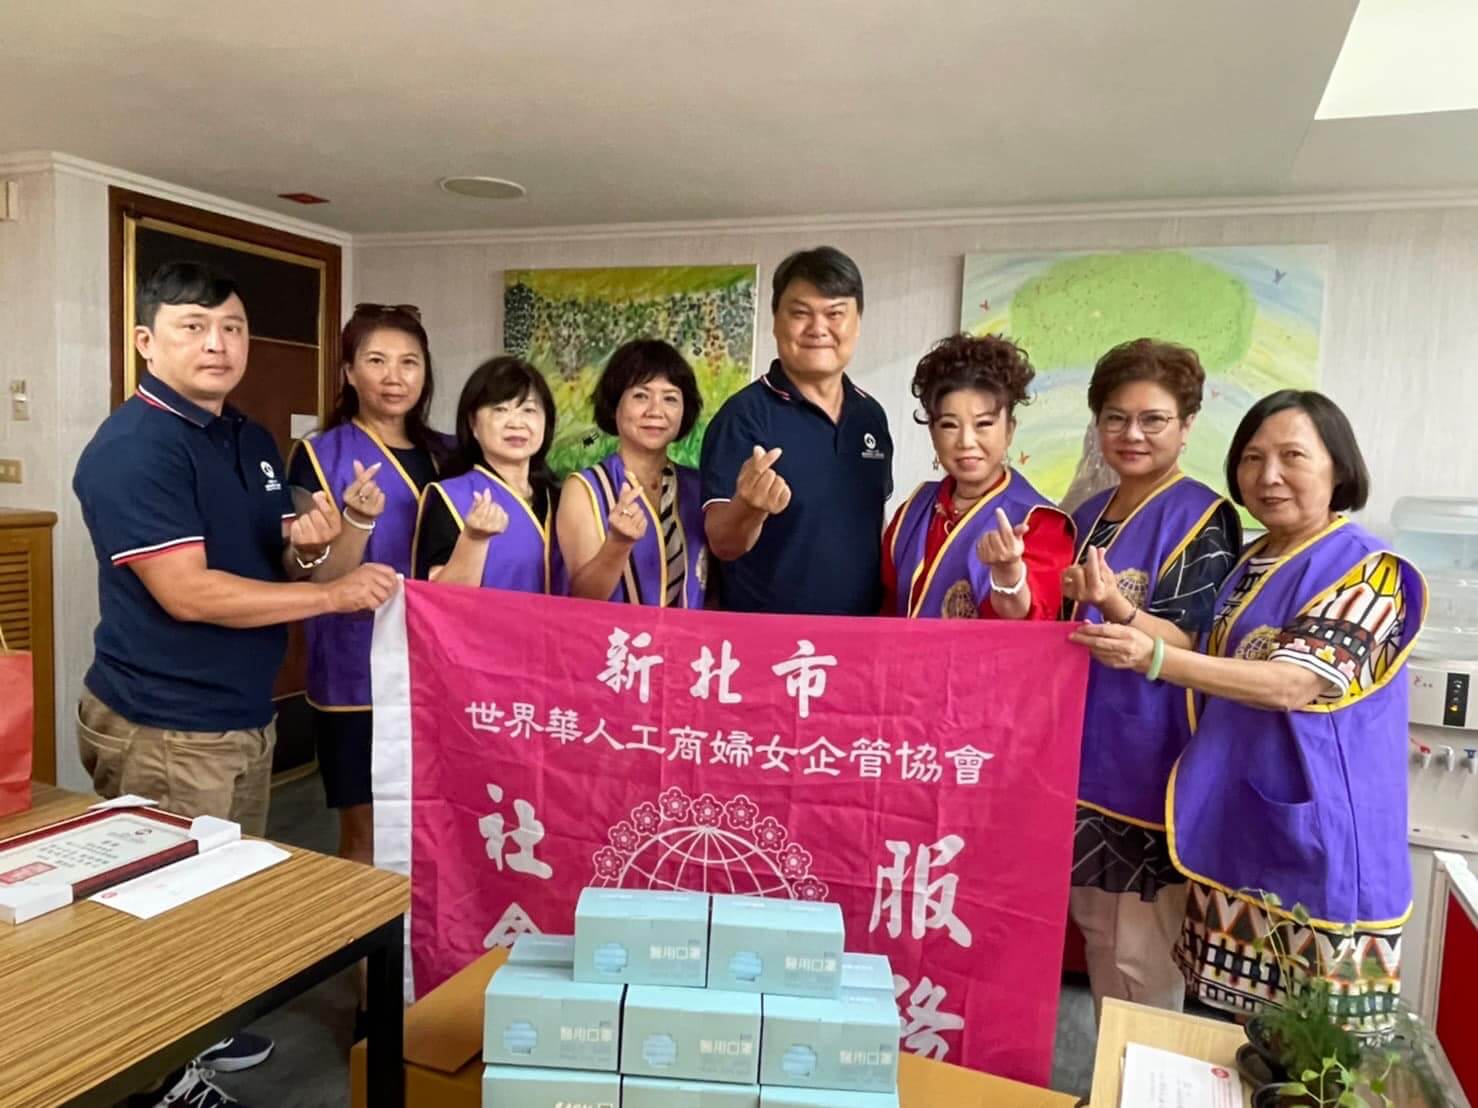 感謝新北市世界華人工商婦女企管協會 參訪與捐贈相關防疫生活物資